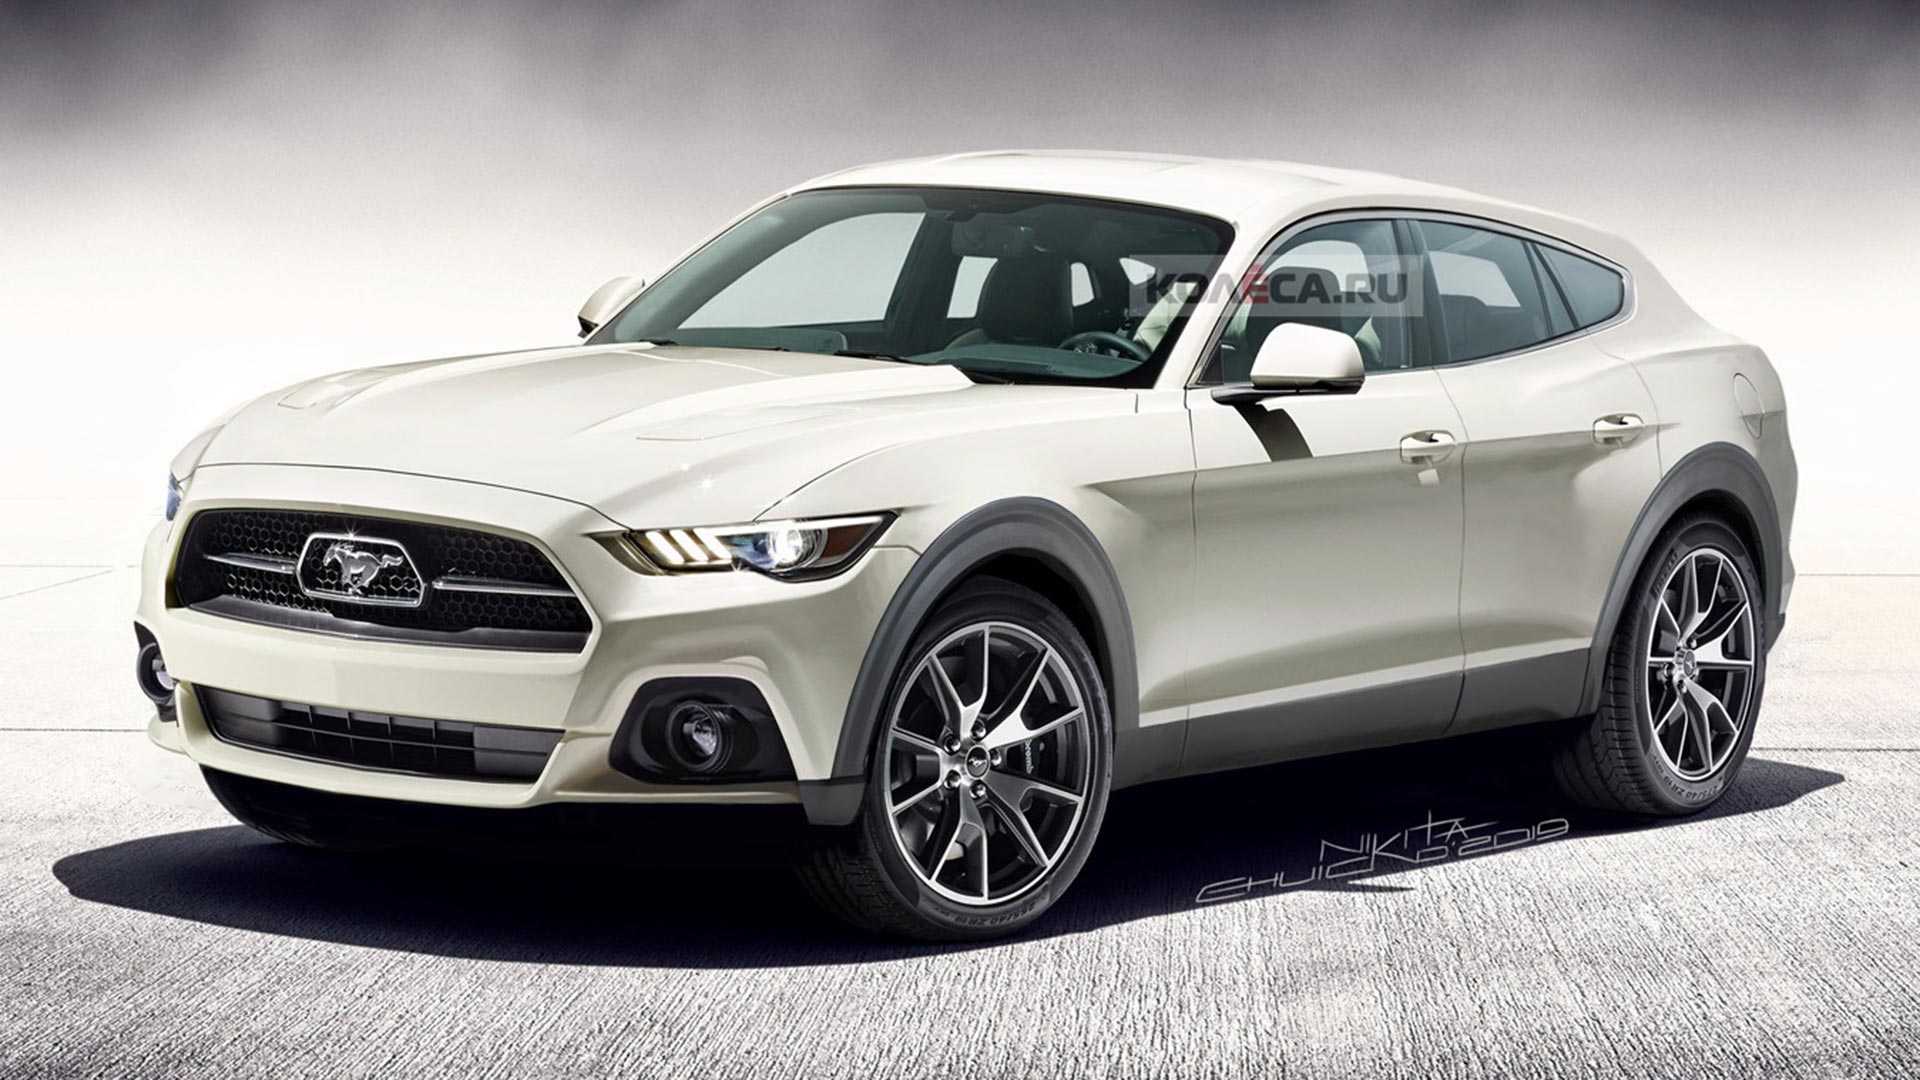 Ford anticipará el Mustang eléctrico en 2020: últimos detalles